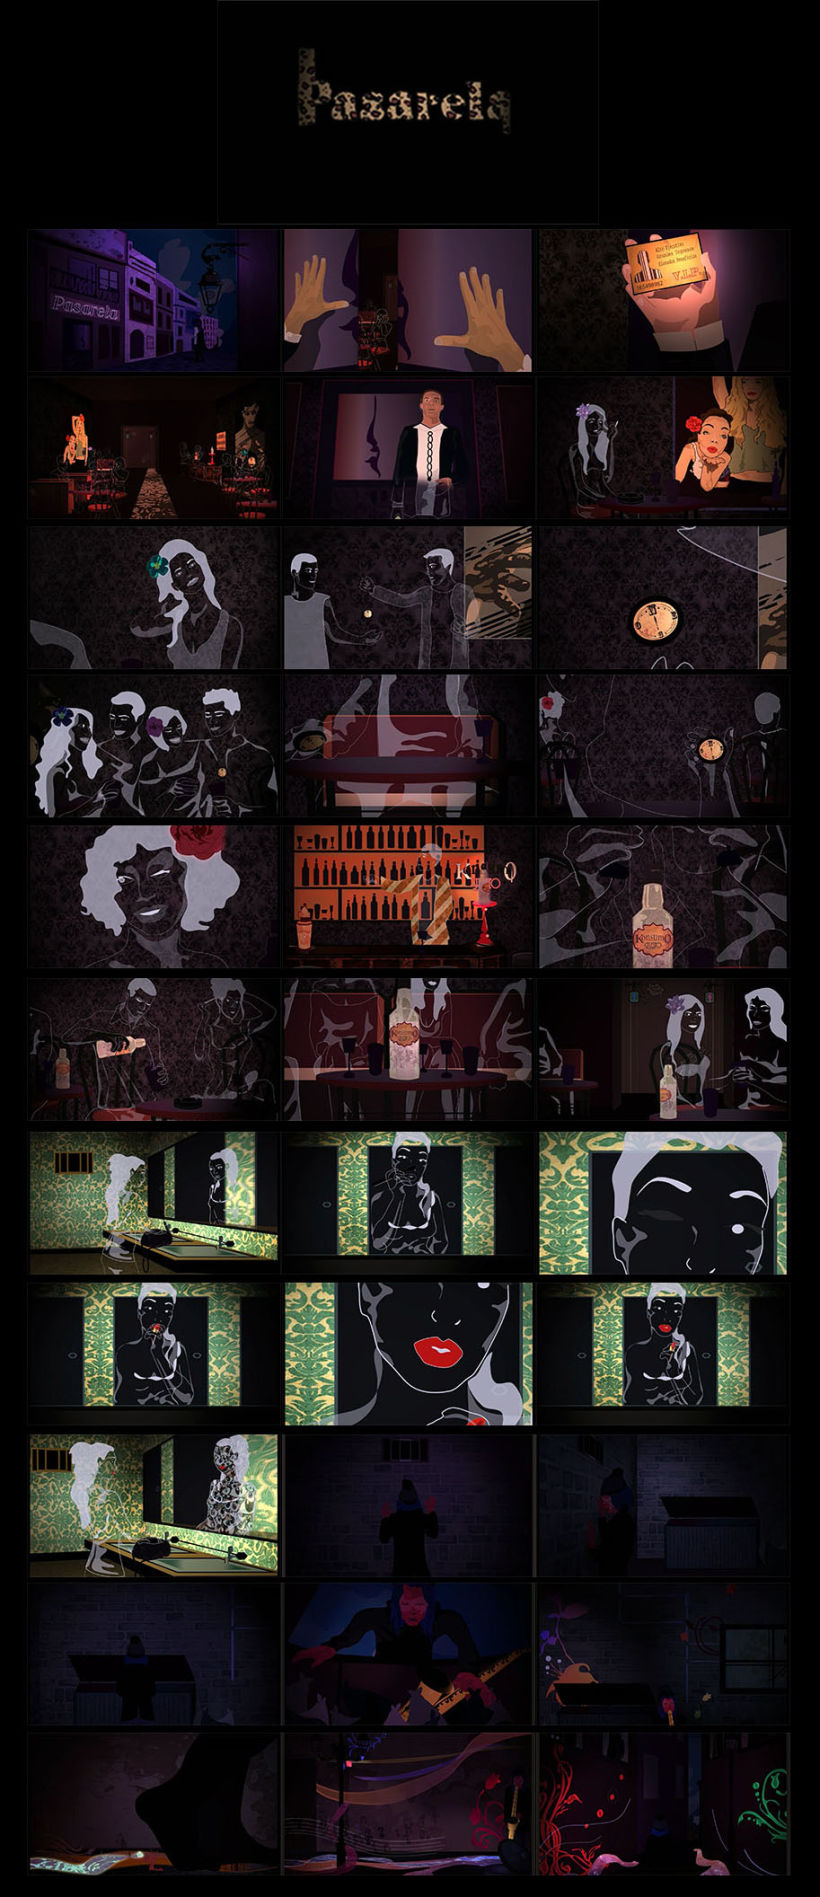 Storyboard/Fotogramas Finales de la animación Pasarela 1